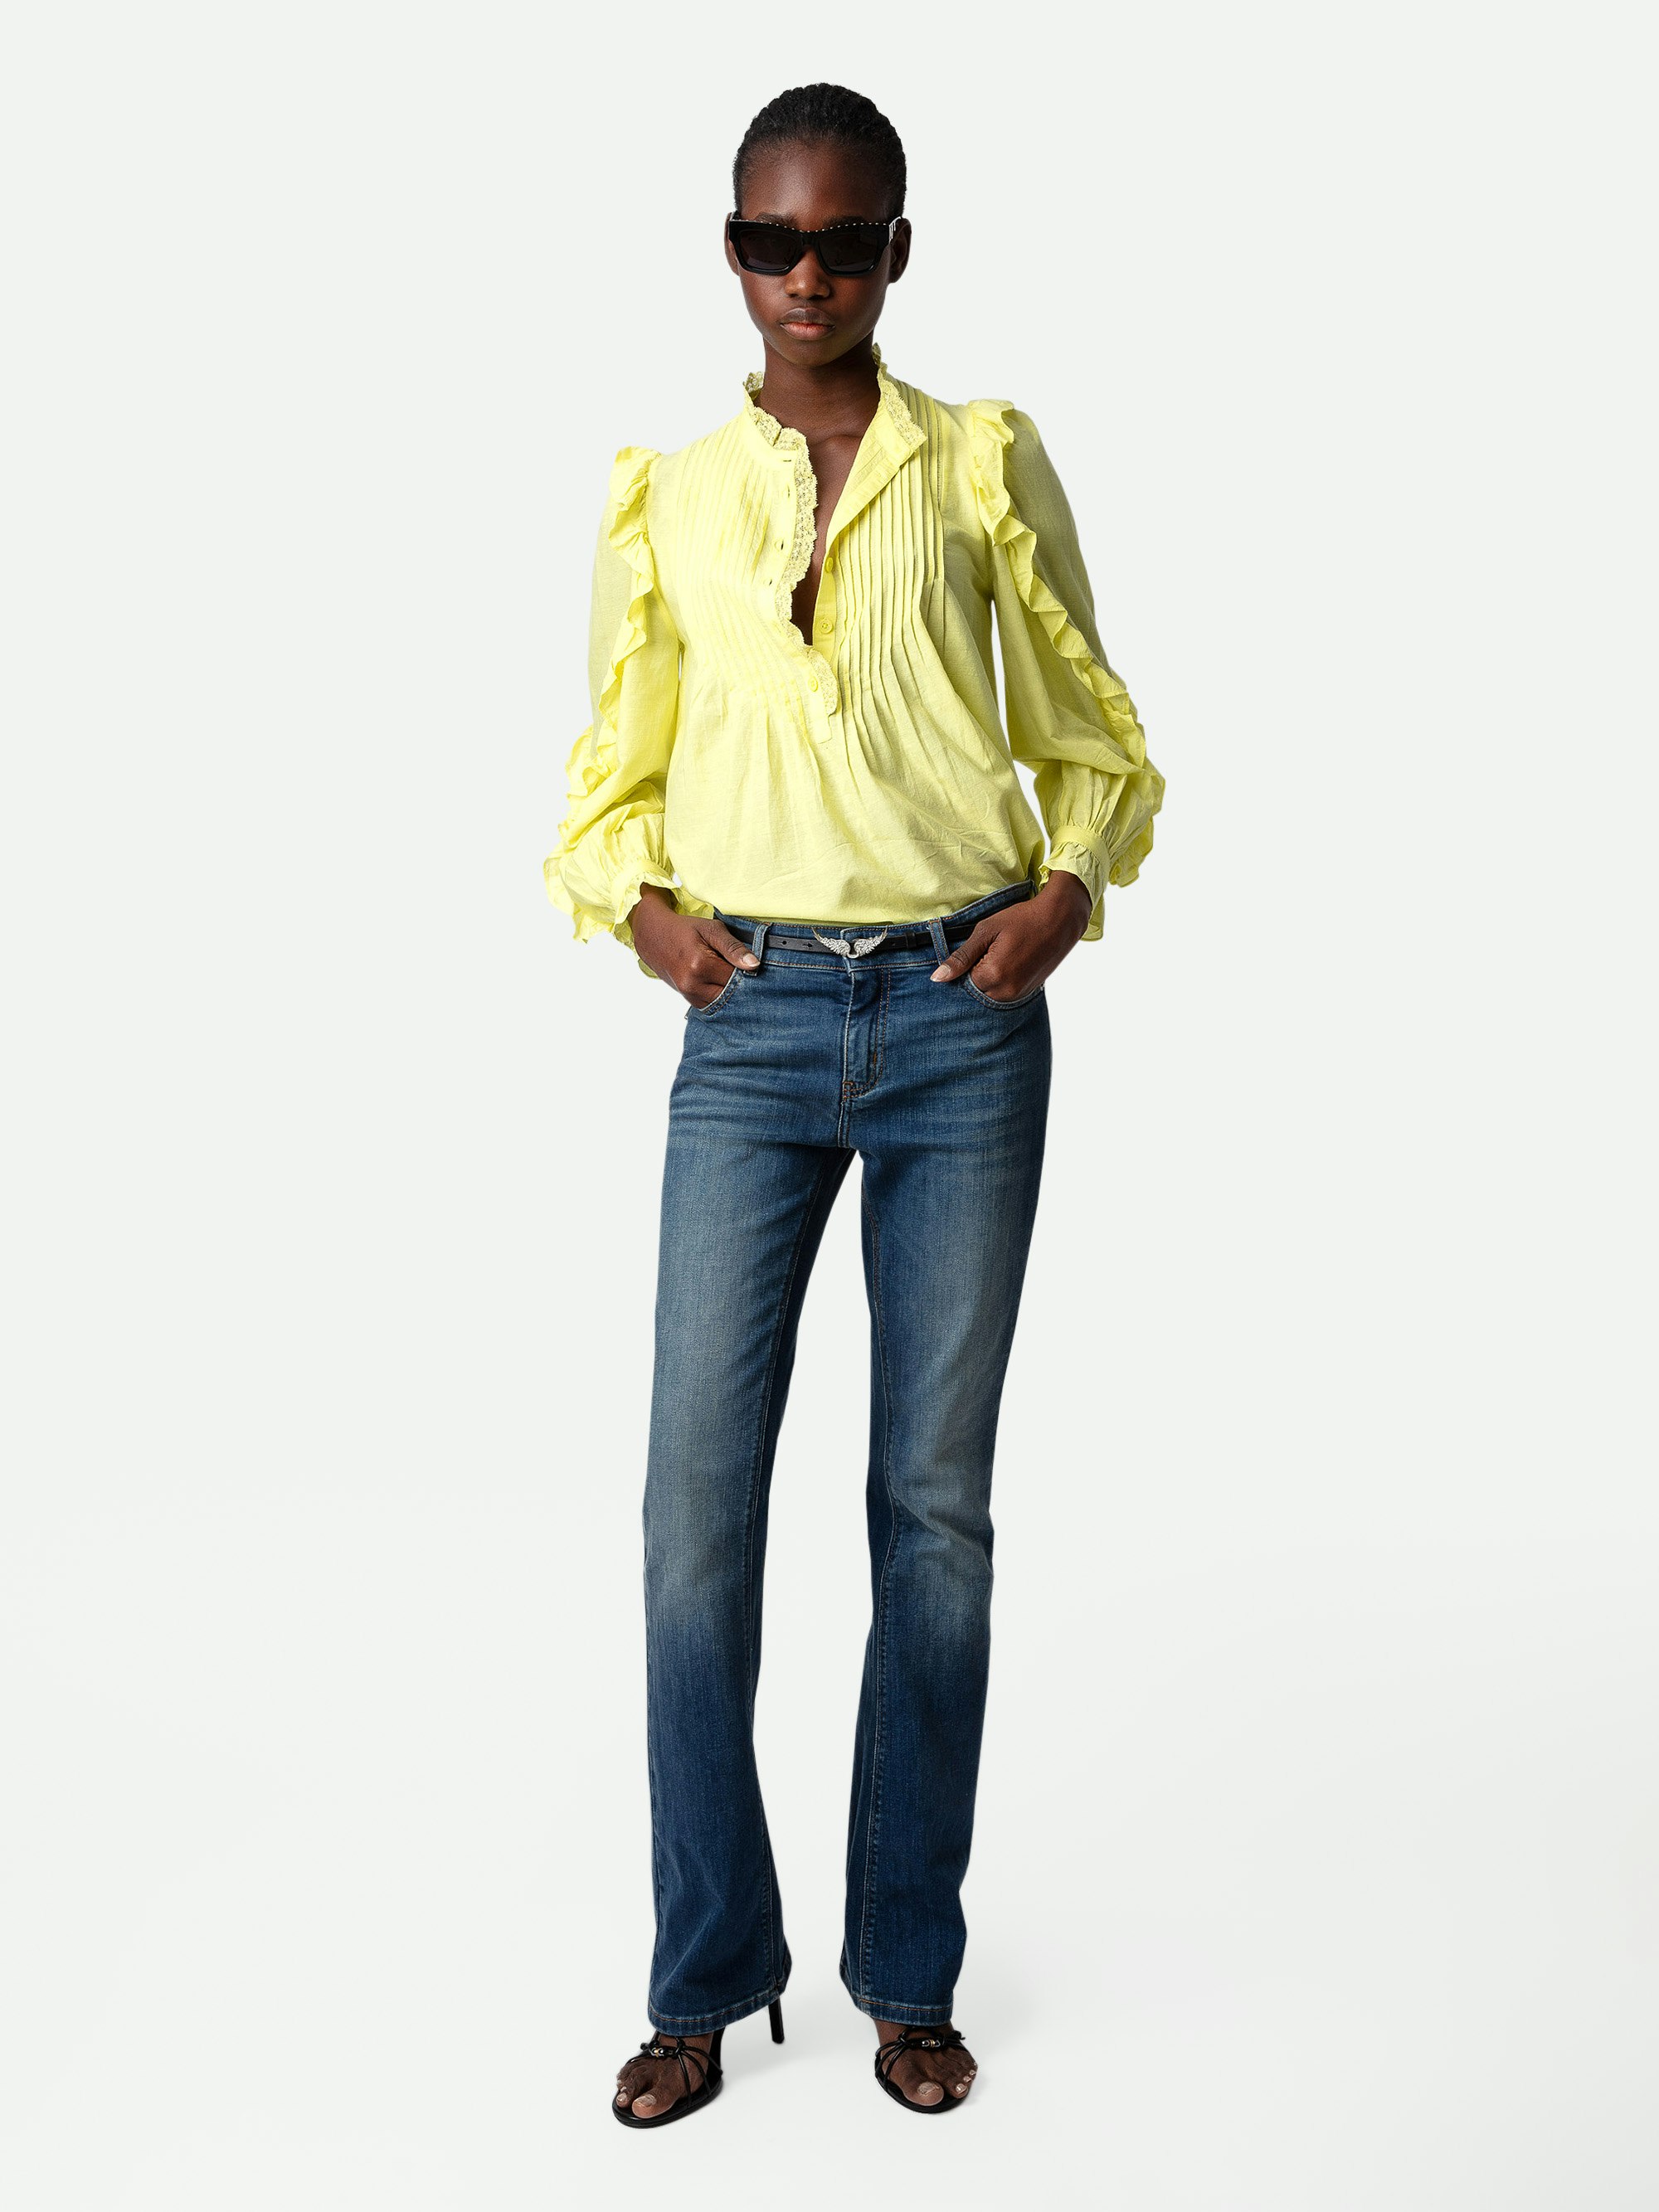 Blusa Timmy - Blusa de algodón en color amarillo claro con mangas largas y volantes.